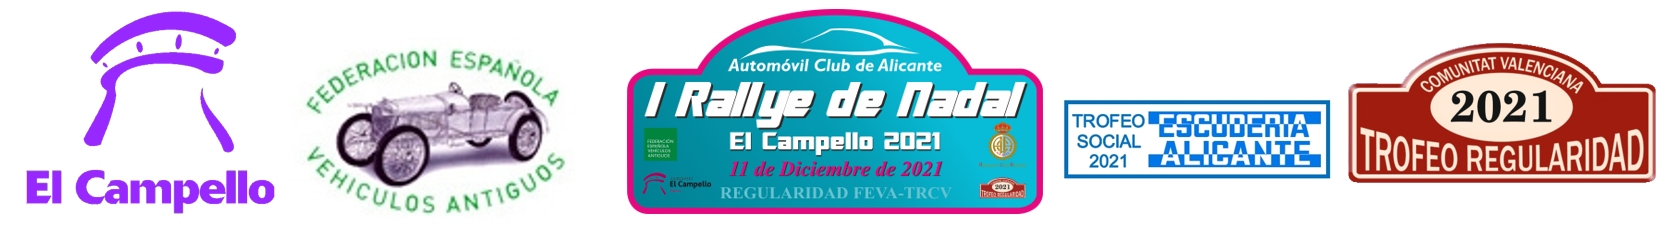 Automóvil Club Alicante